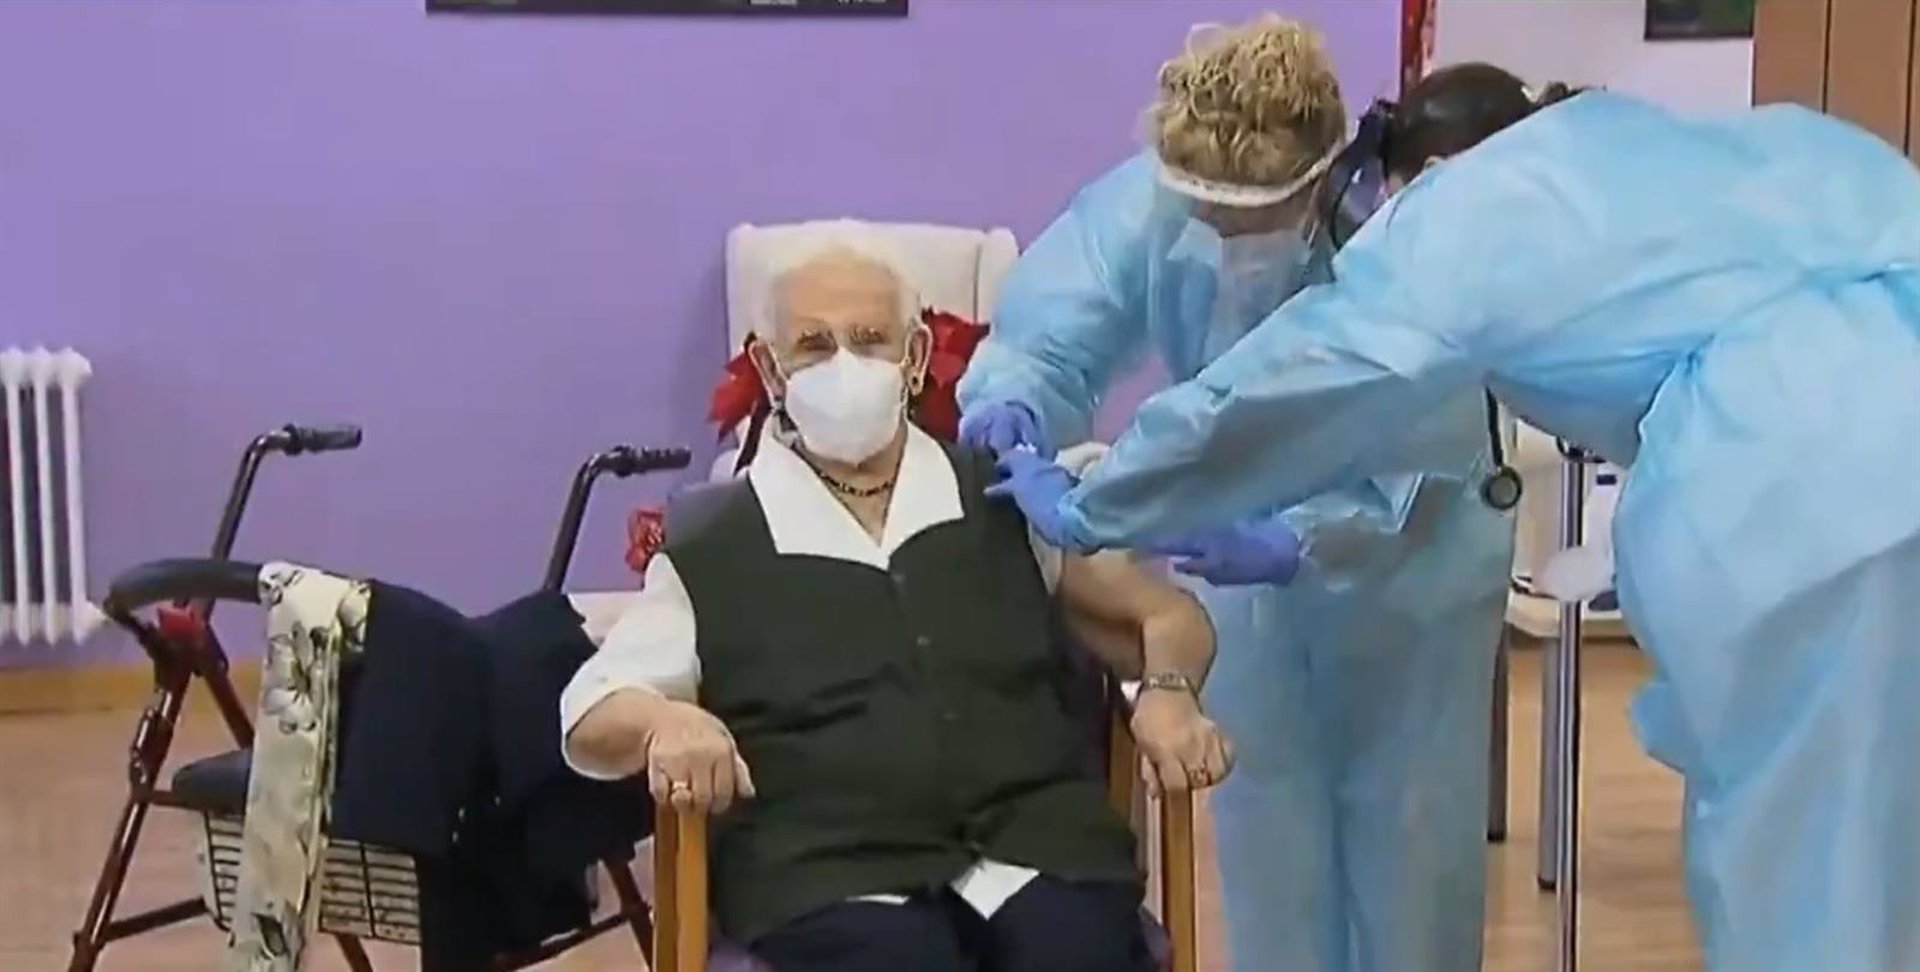 Araceli, de 96 años y oriunda de Guadix, es la primera persona vacunada contra el Covid-19 en España